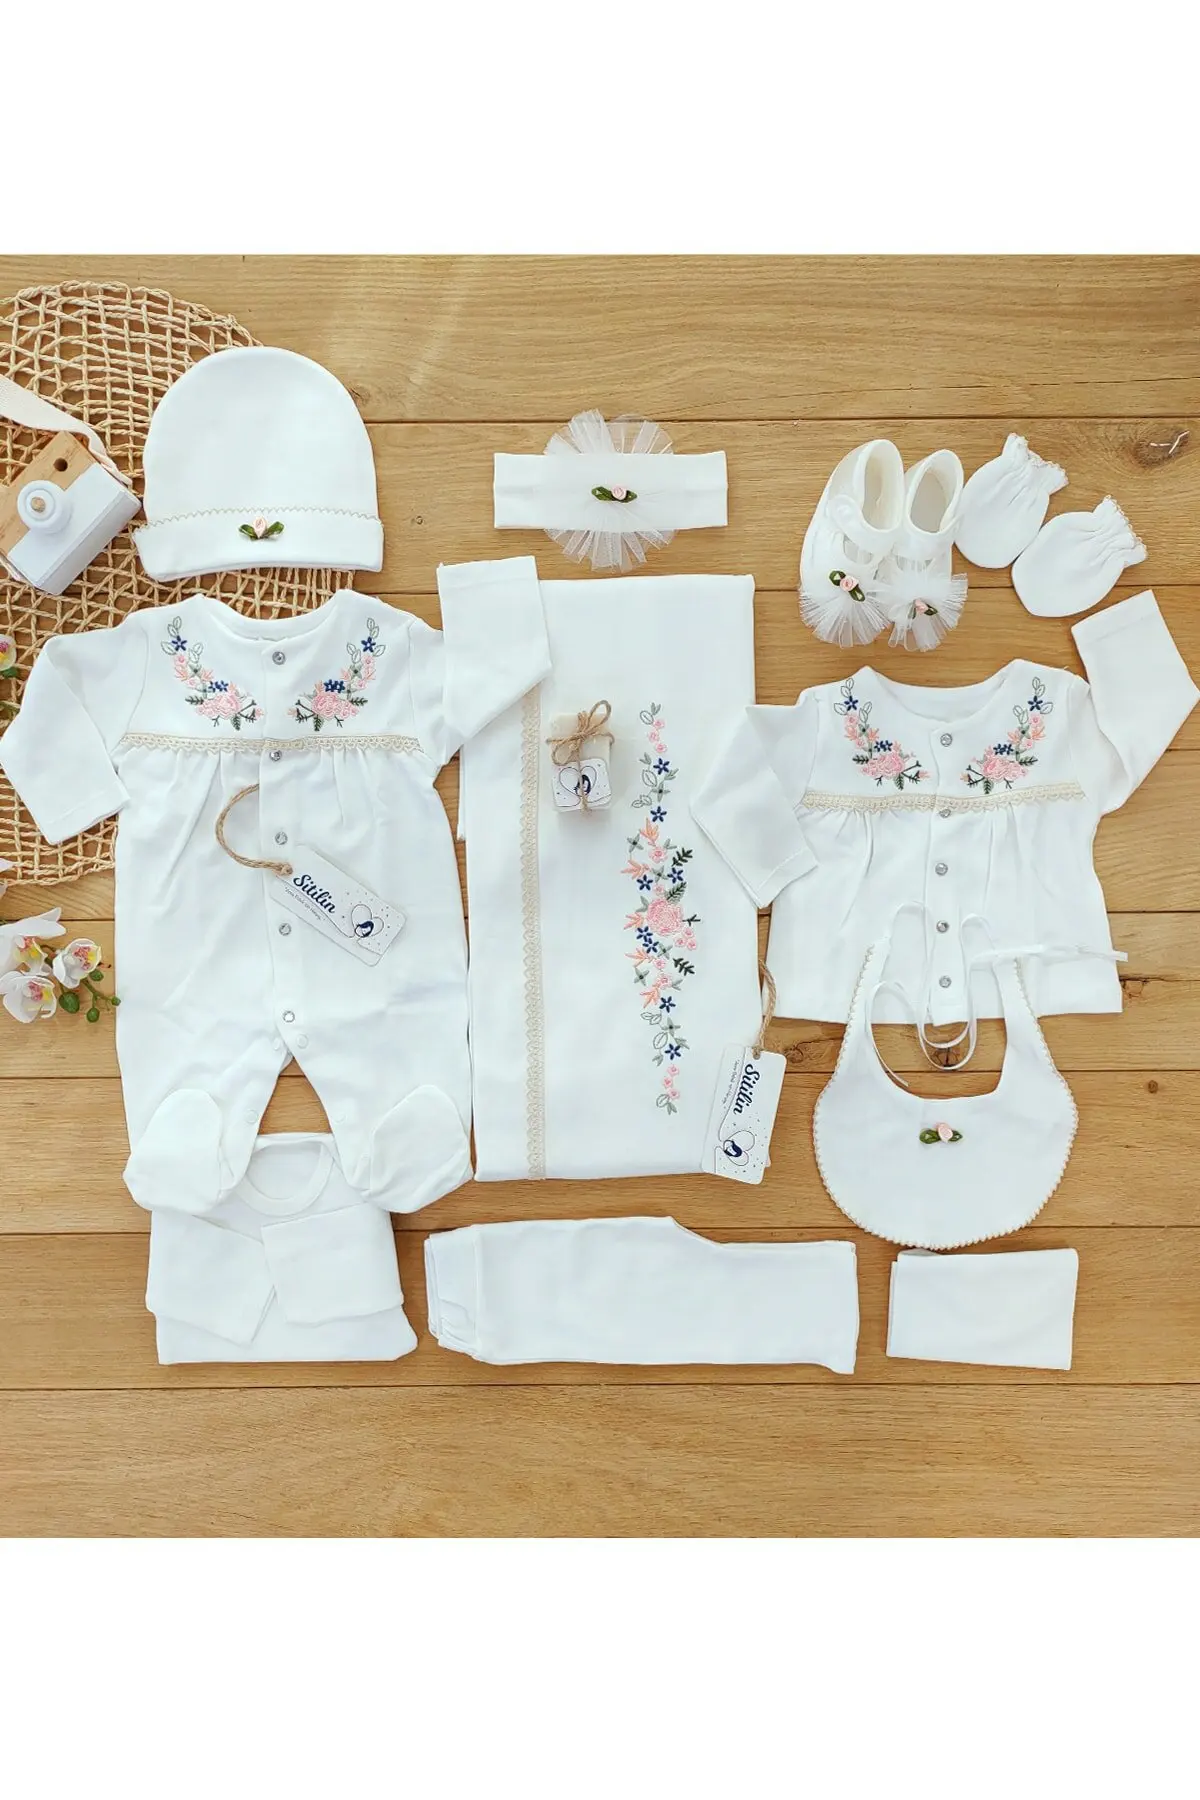 Conjunto de ropa interior para recién nacido de 0-3 meses, traje de Hospital de punto de cruz Natural de color crudo, cómodo y antialergénico